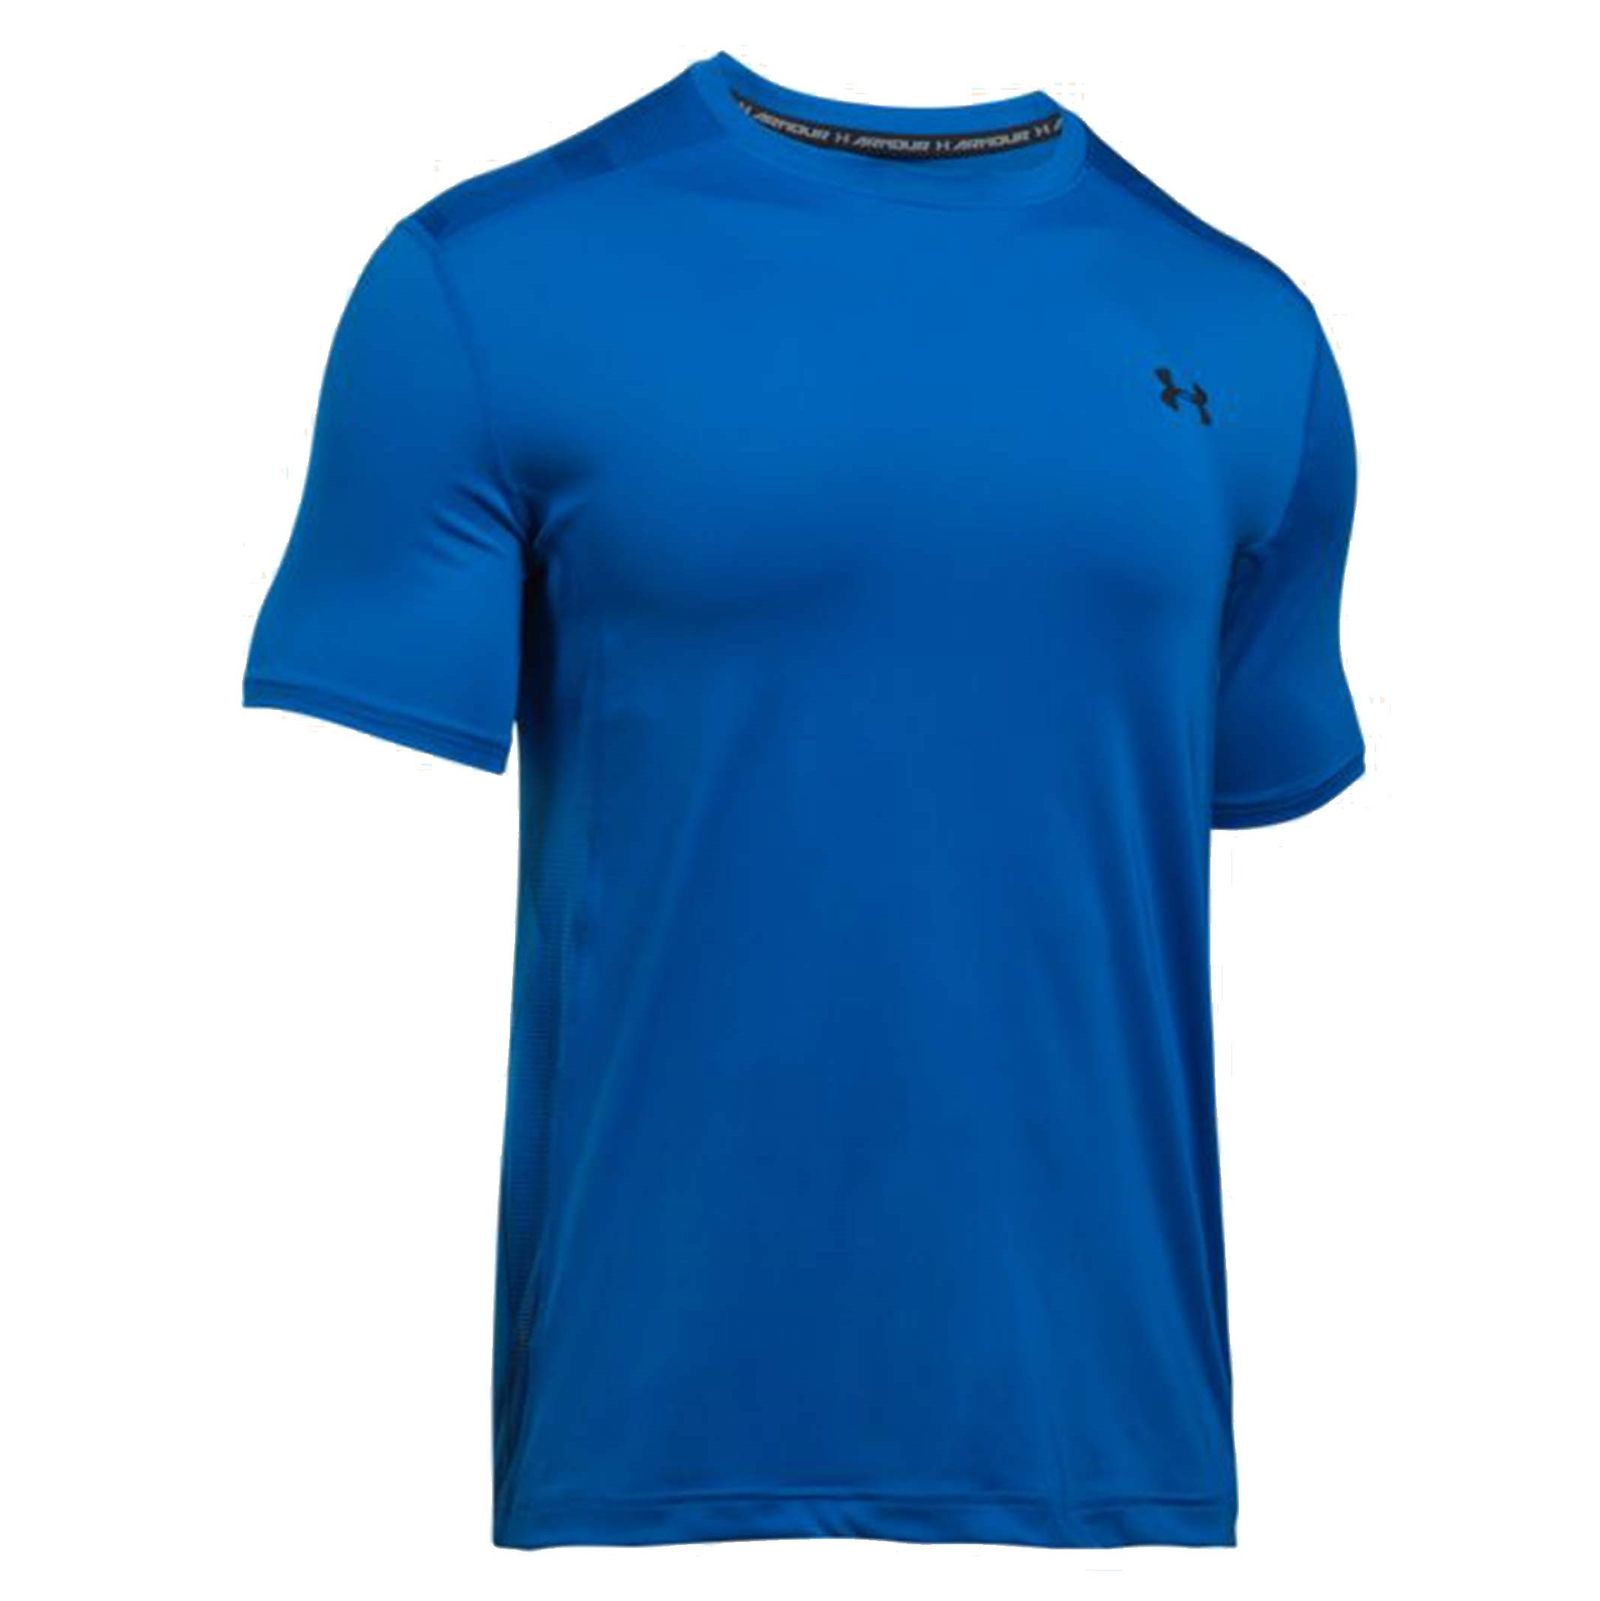 تی شرت ورزشی یقه گرد مردانه - آندر آرمور - آبي - 2